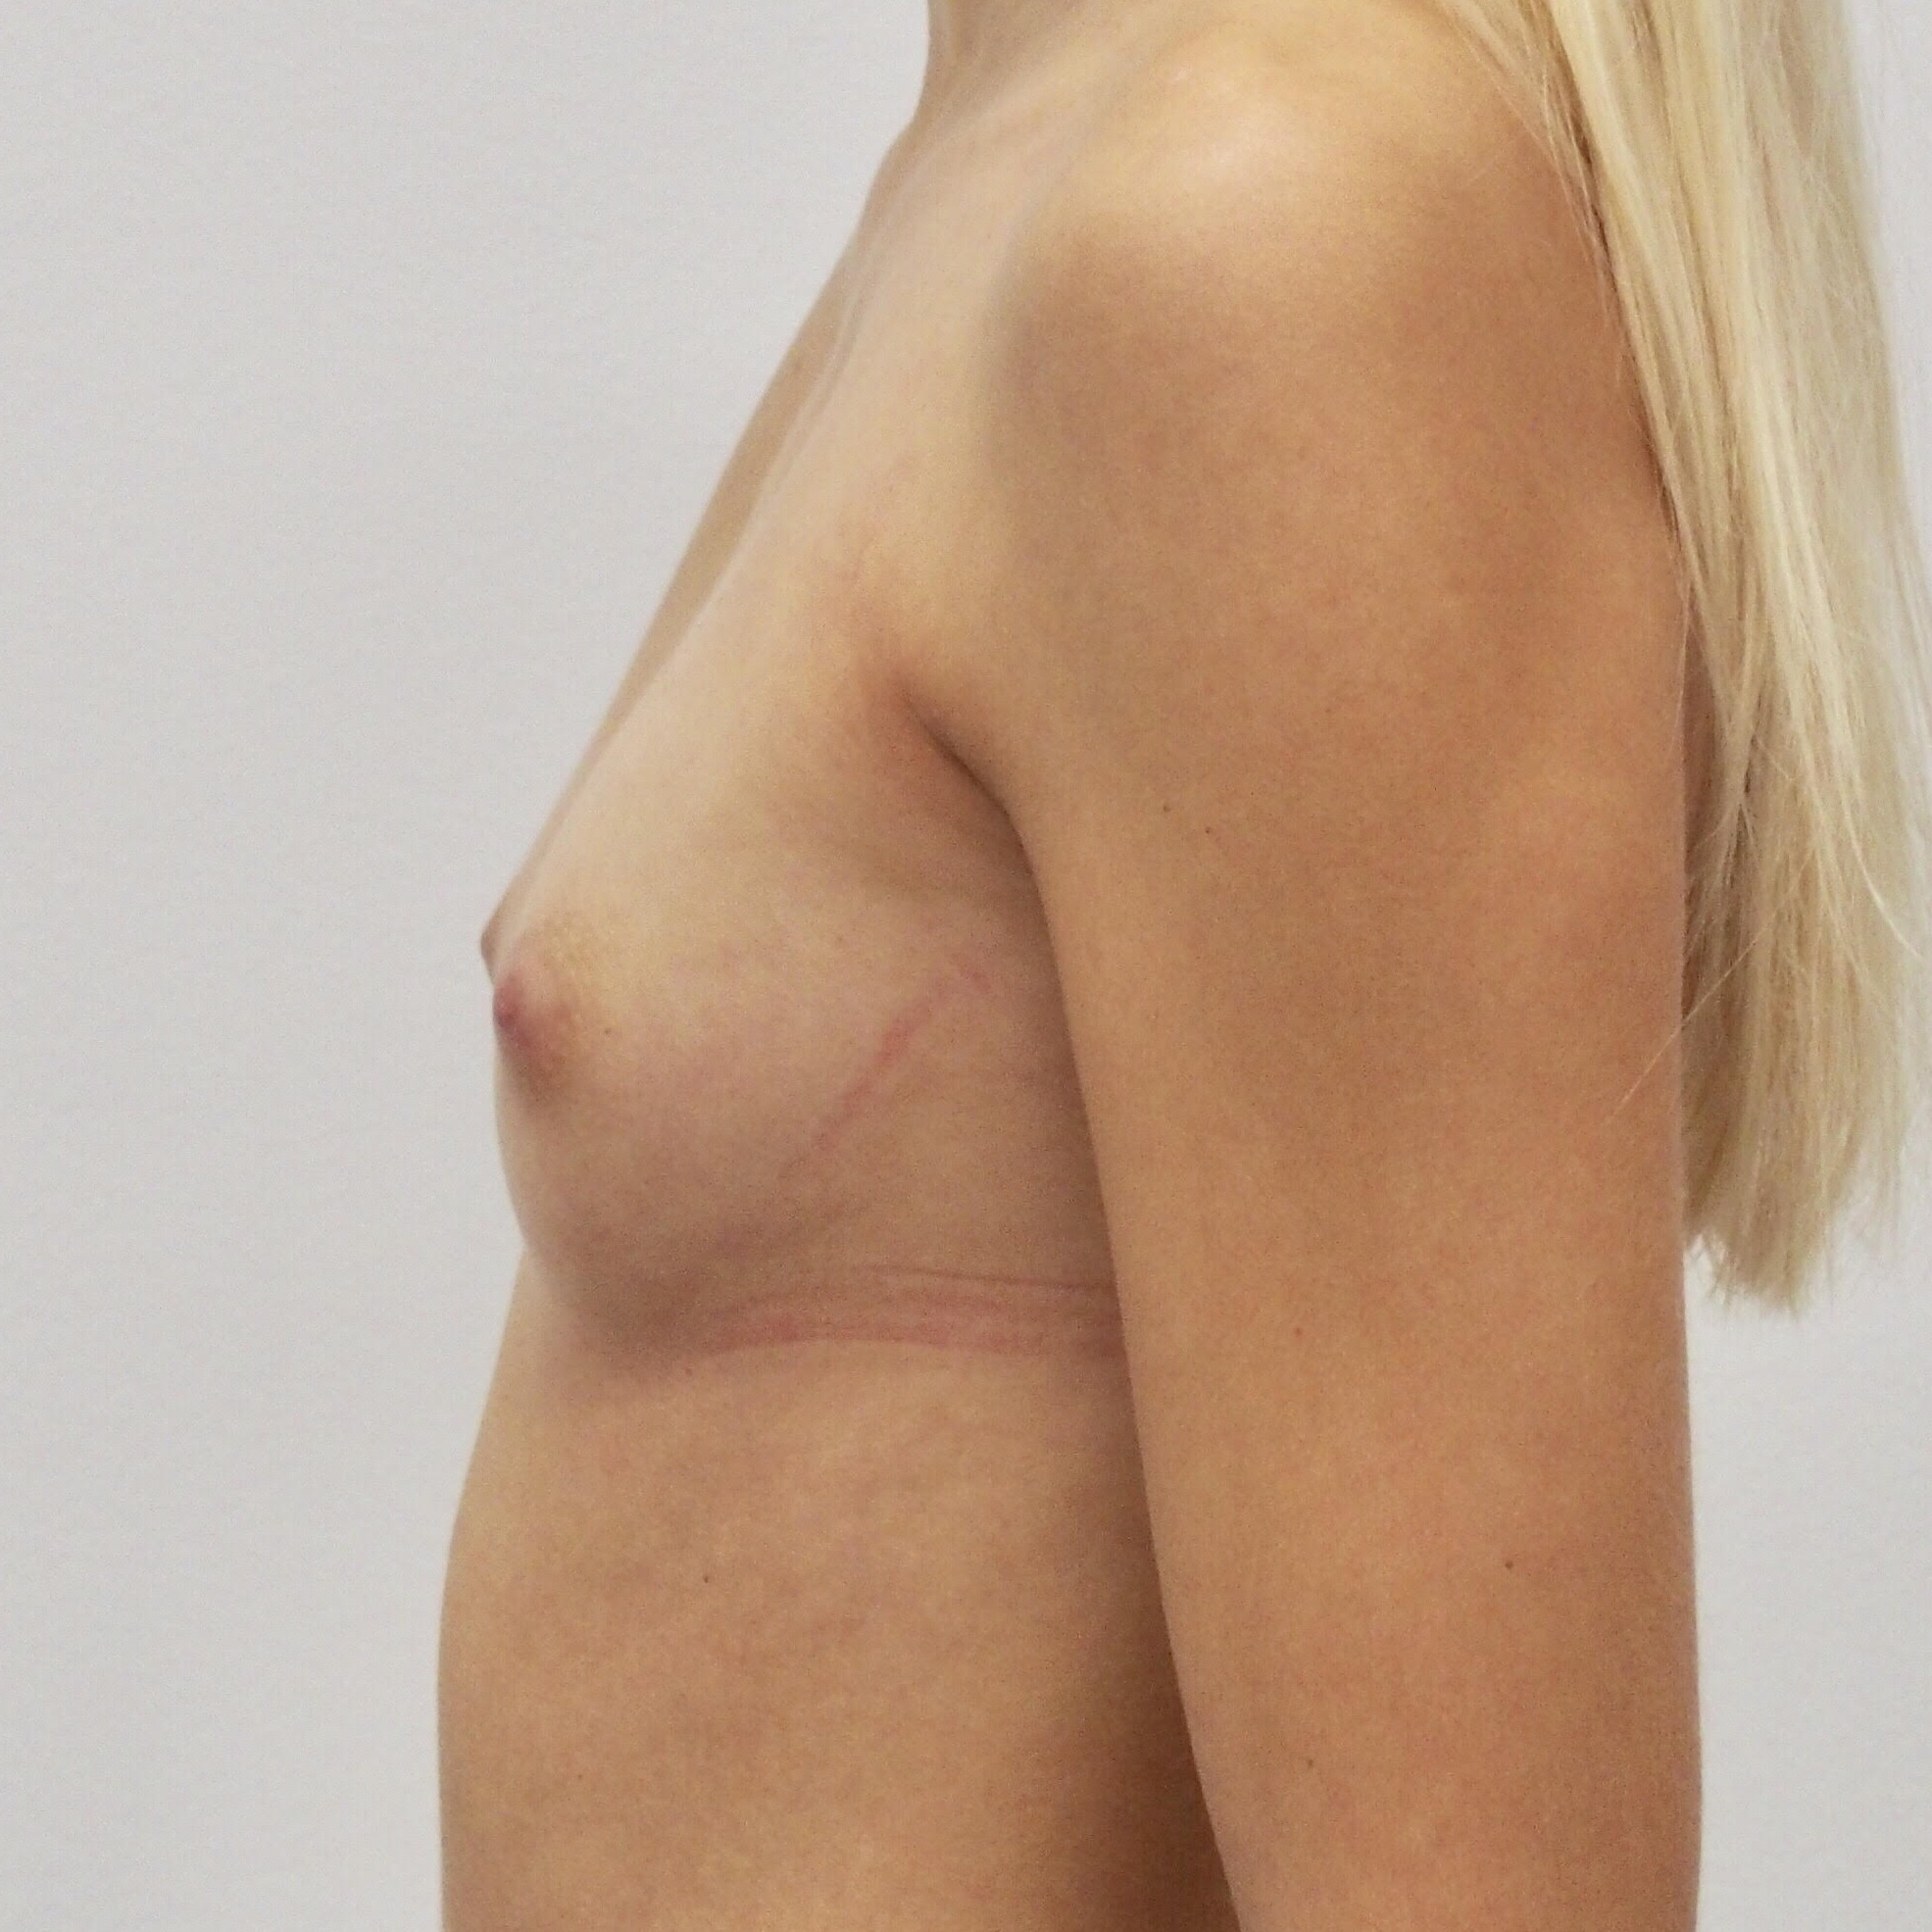 Klientka před a po zvětšení prsou. Použity byly kulaté implantáty o velikosti 255 mililitrů. Vloženy byly podprsní rýhou pod sval.
Operatér: MUDr. Petros Christodoulou